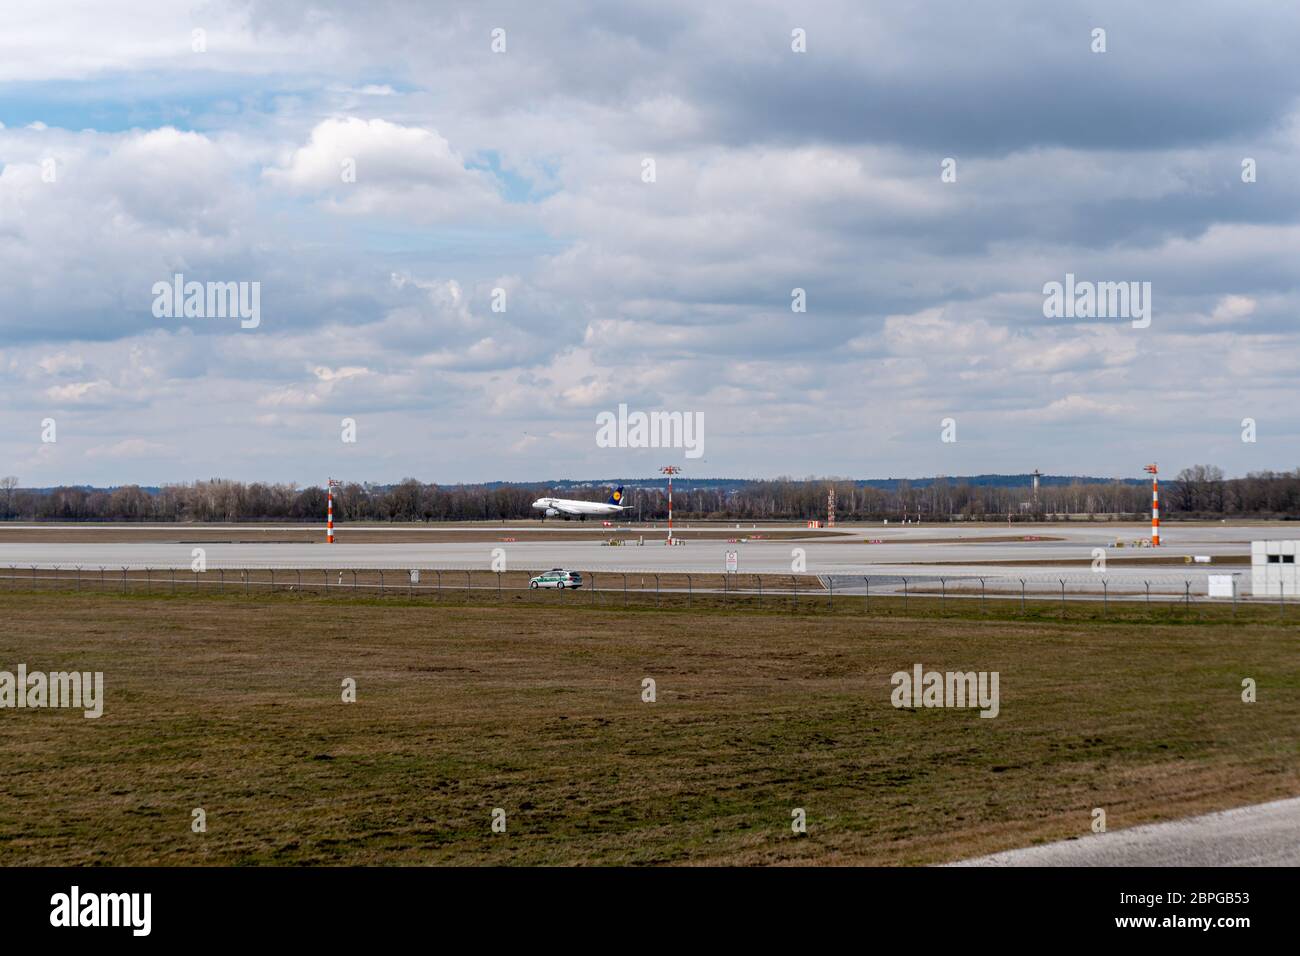 München, Deutschland - 03 29 2018: Flugzeug der Lufthansa Airline landet mit bewölktem Himmel auf dem Flughafen München Stockfoto